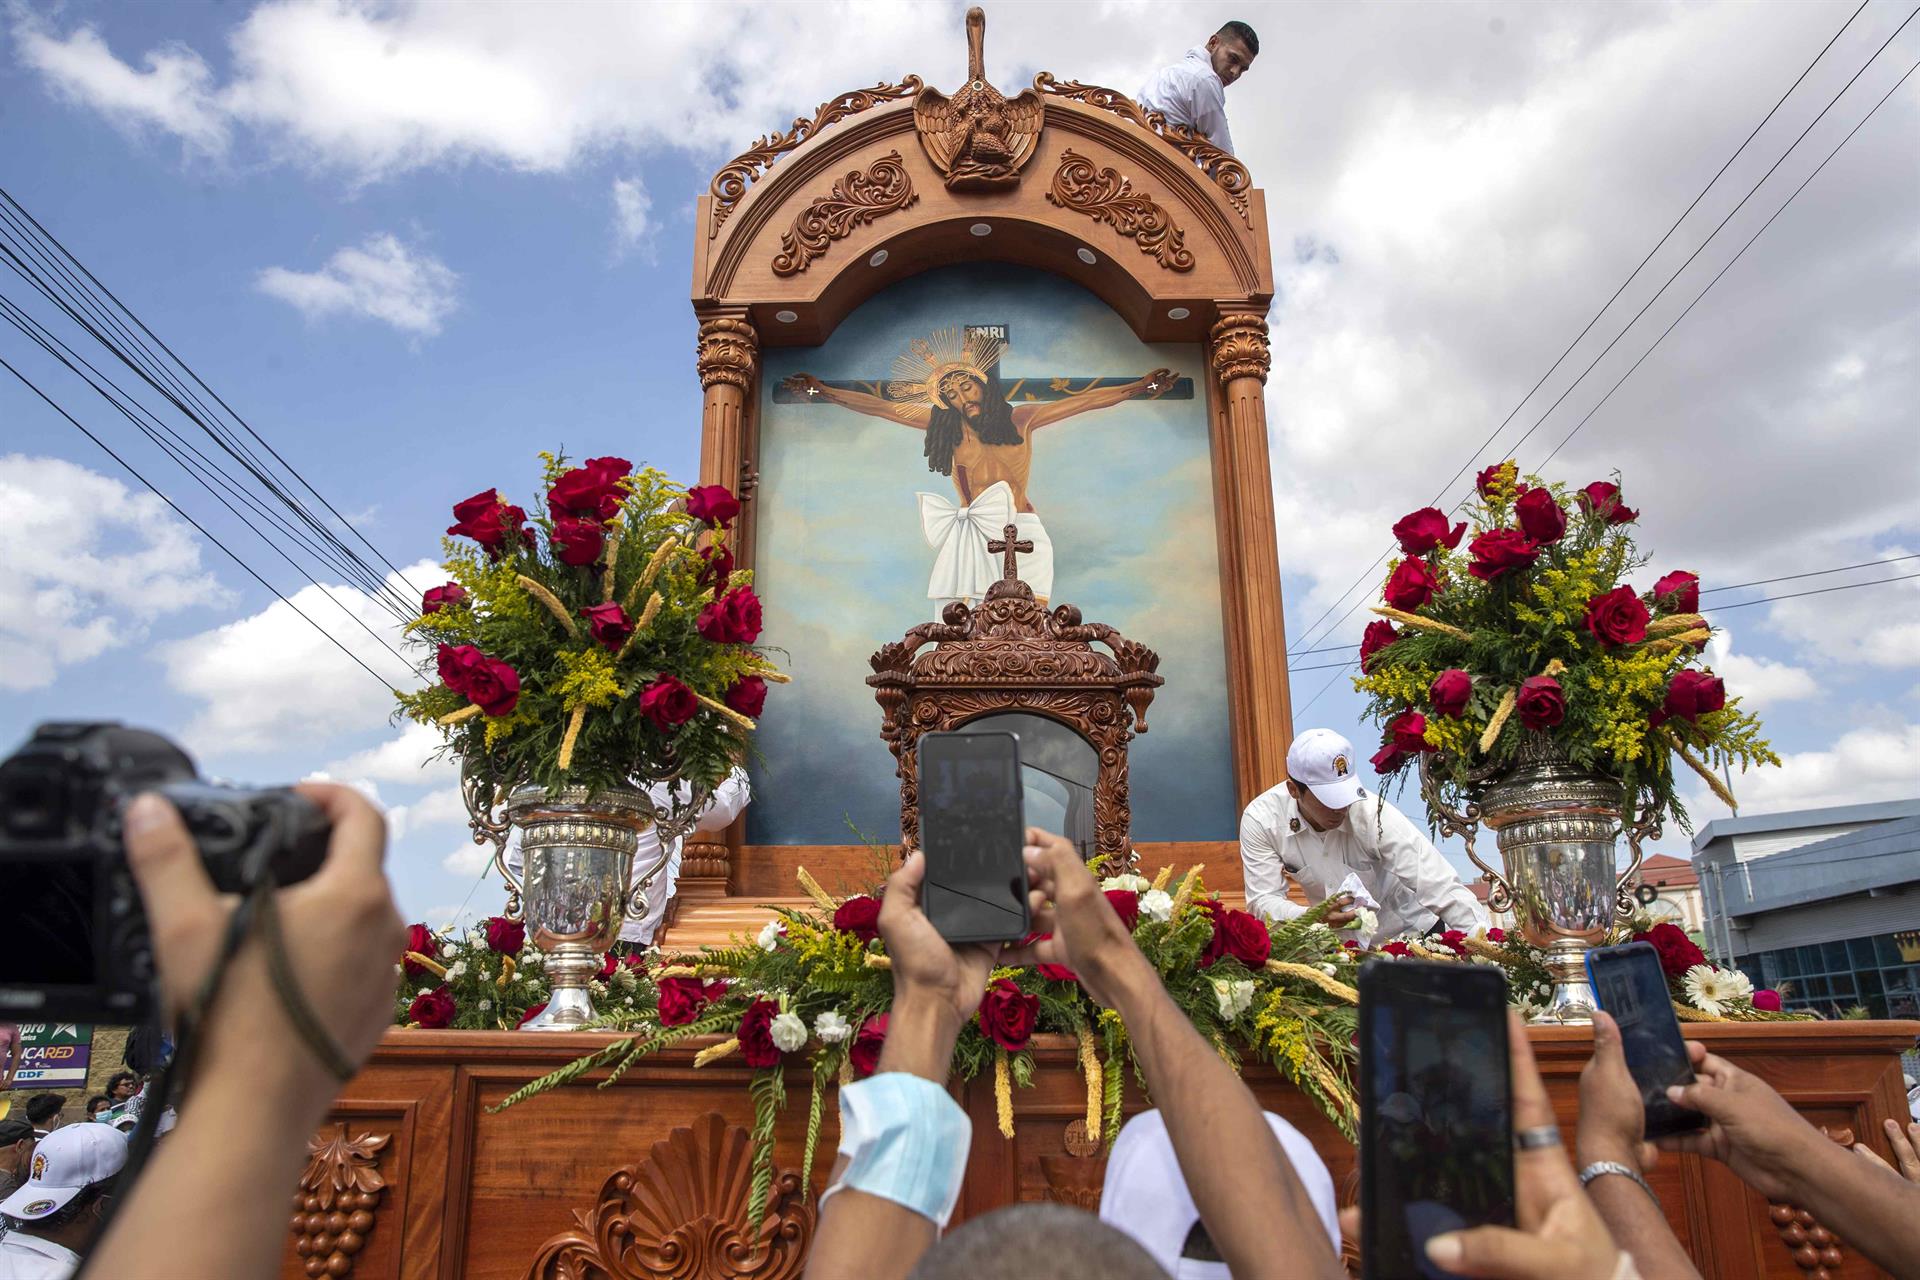 “Solo el Papa sabe”: silencio e incertidumbre sobre el futuro de la Iglesia católica en Nicaragua